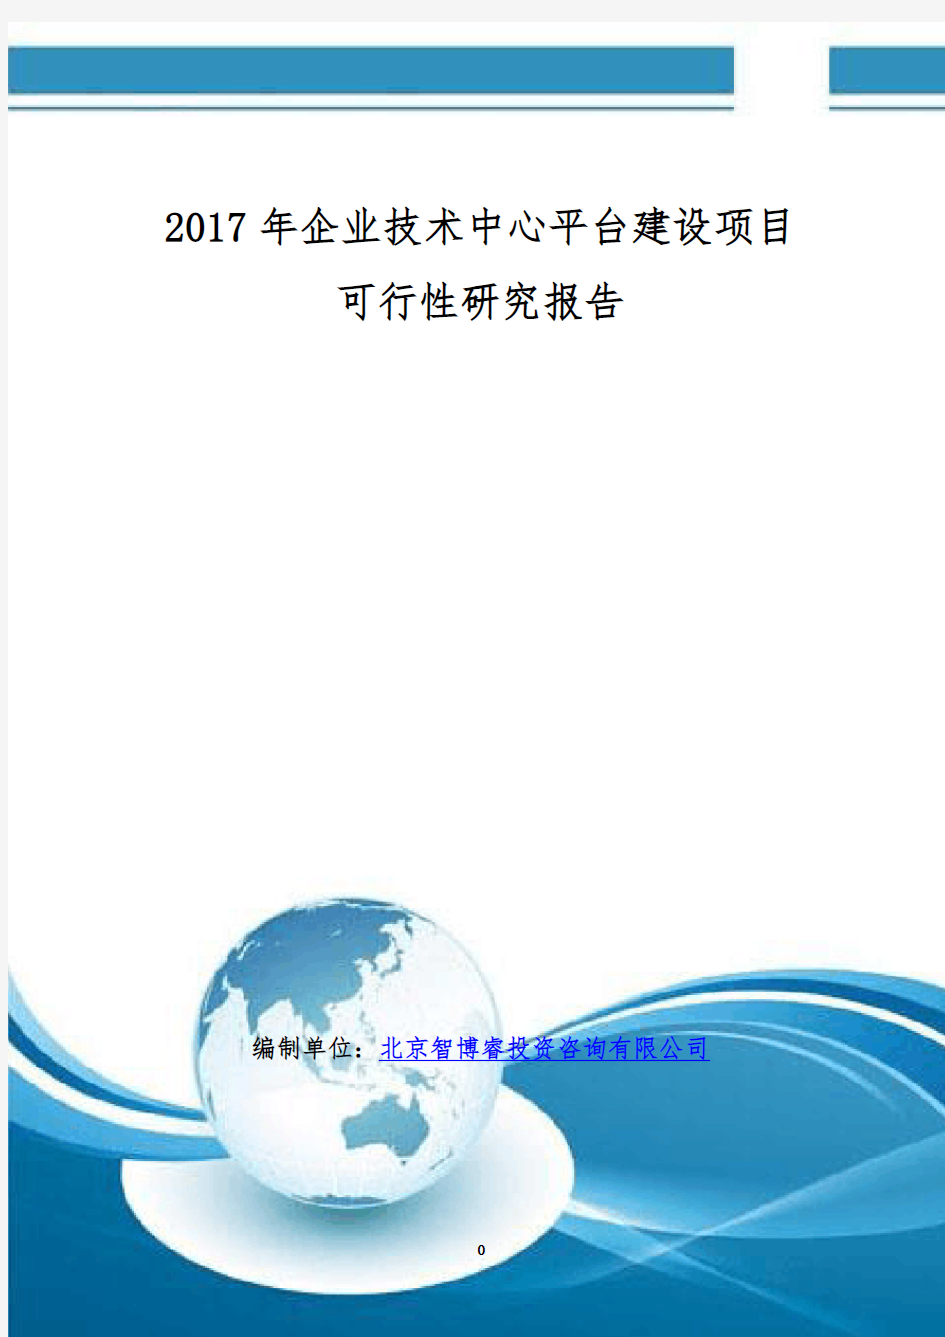 2017年企业技术中心平台建设项目可行性研究报告(编制大纲)